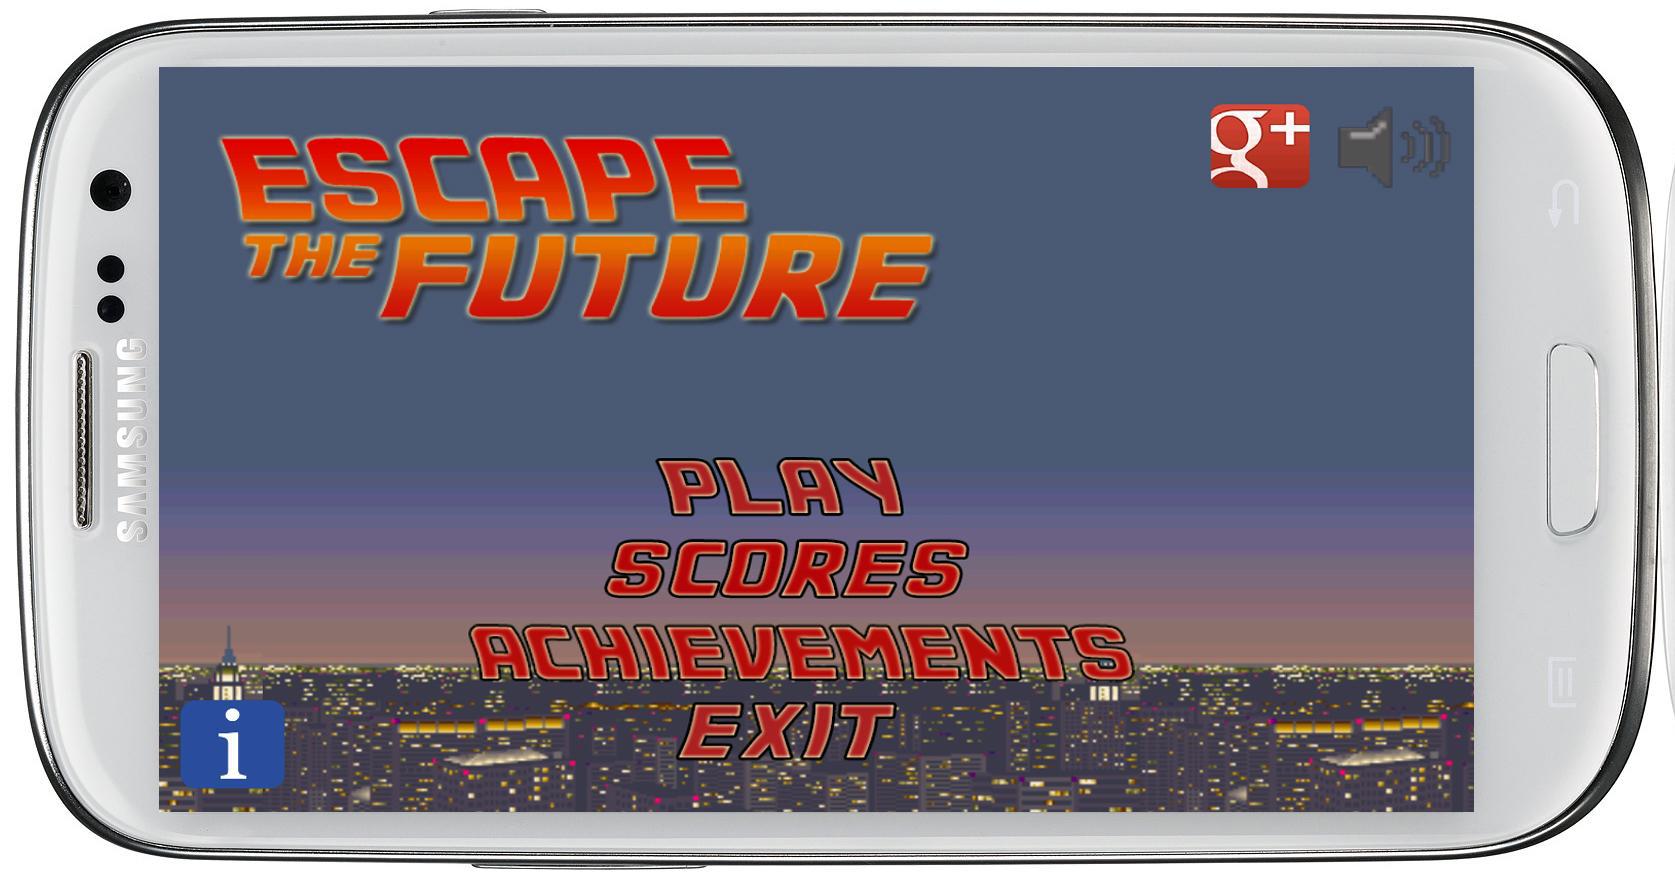 Escape the future